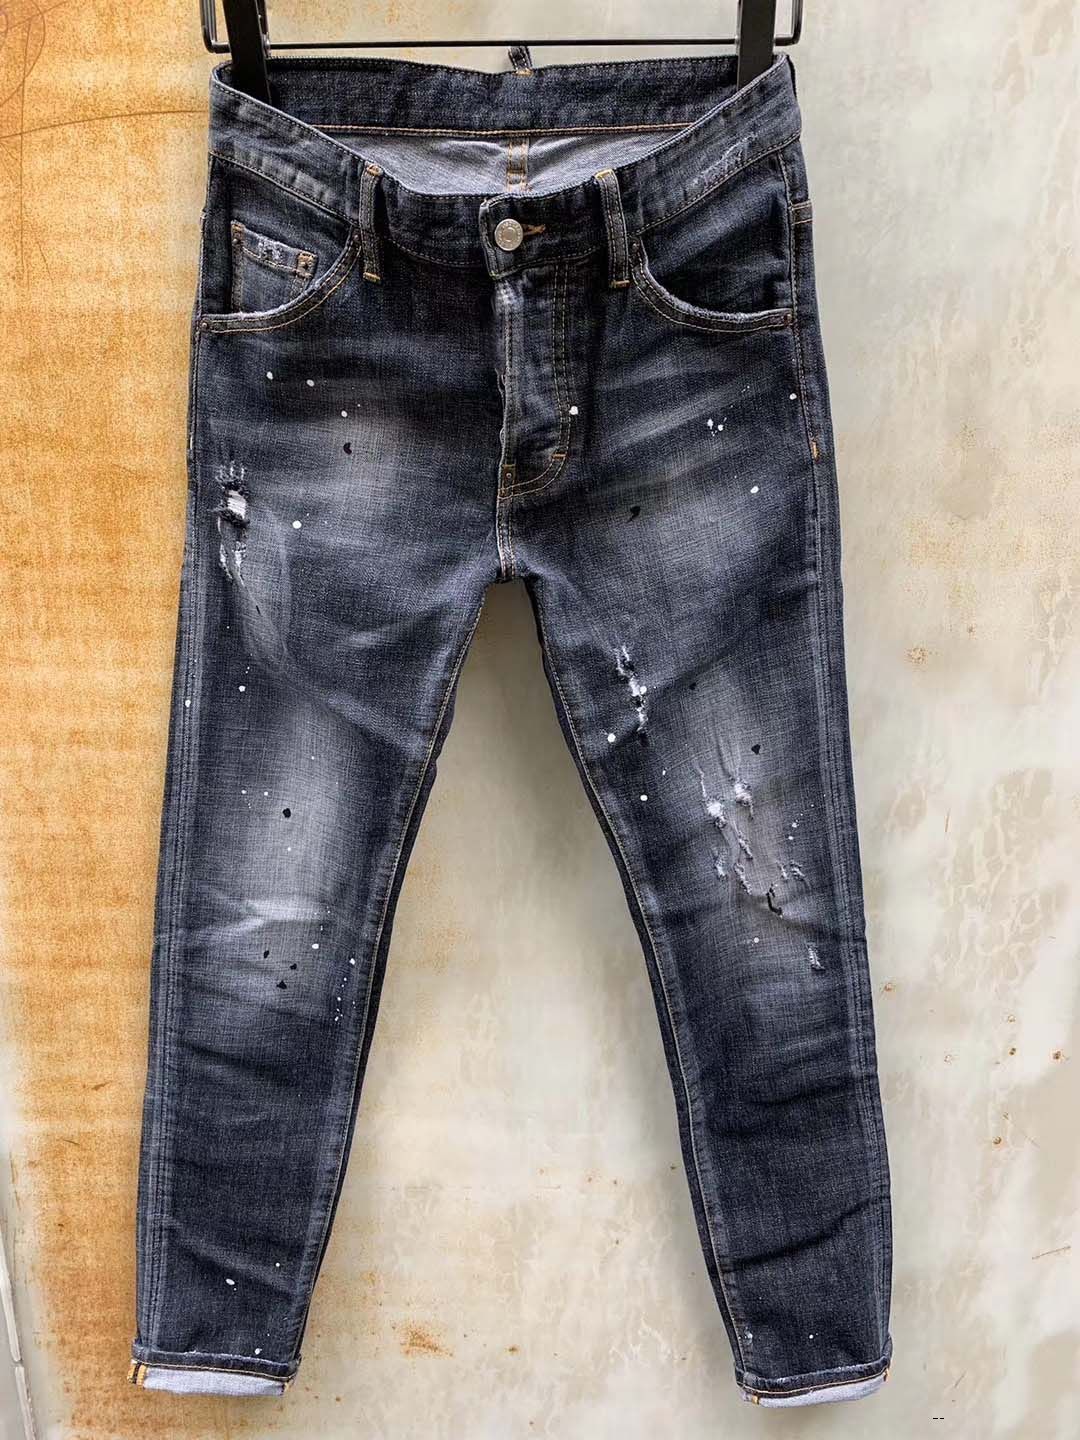 2021 Mens Designer Jeans Fashion Brand Men S Jeans True Slim Washed